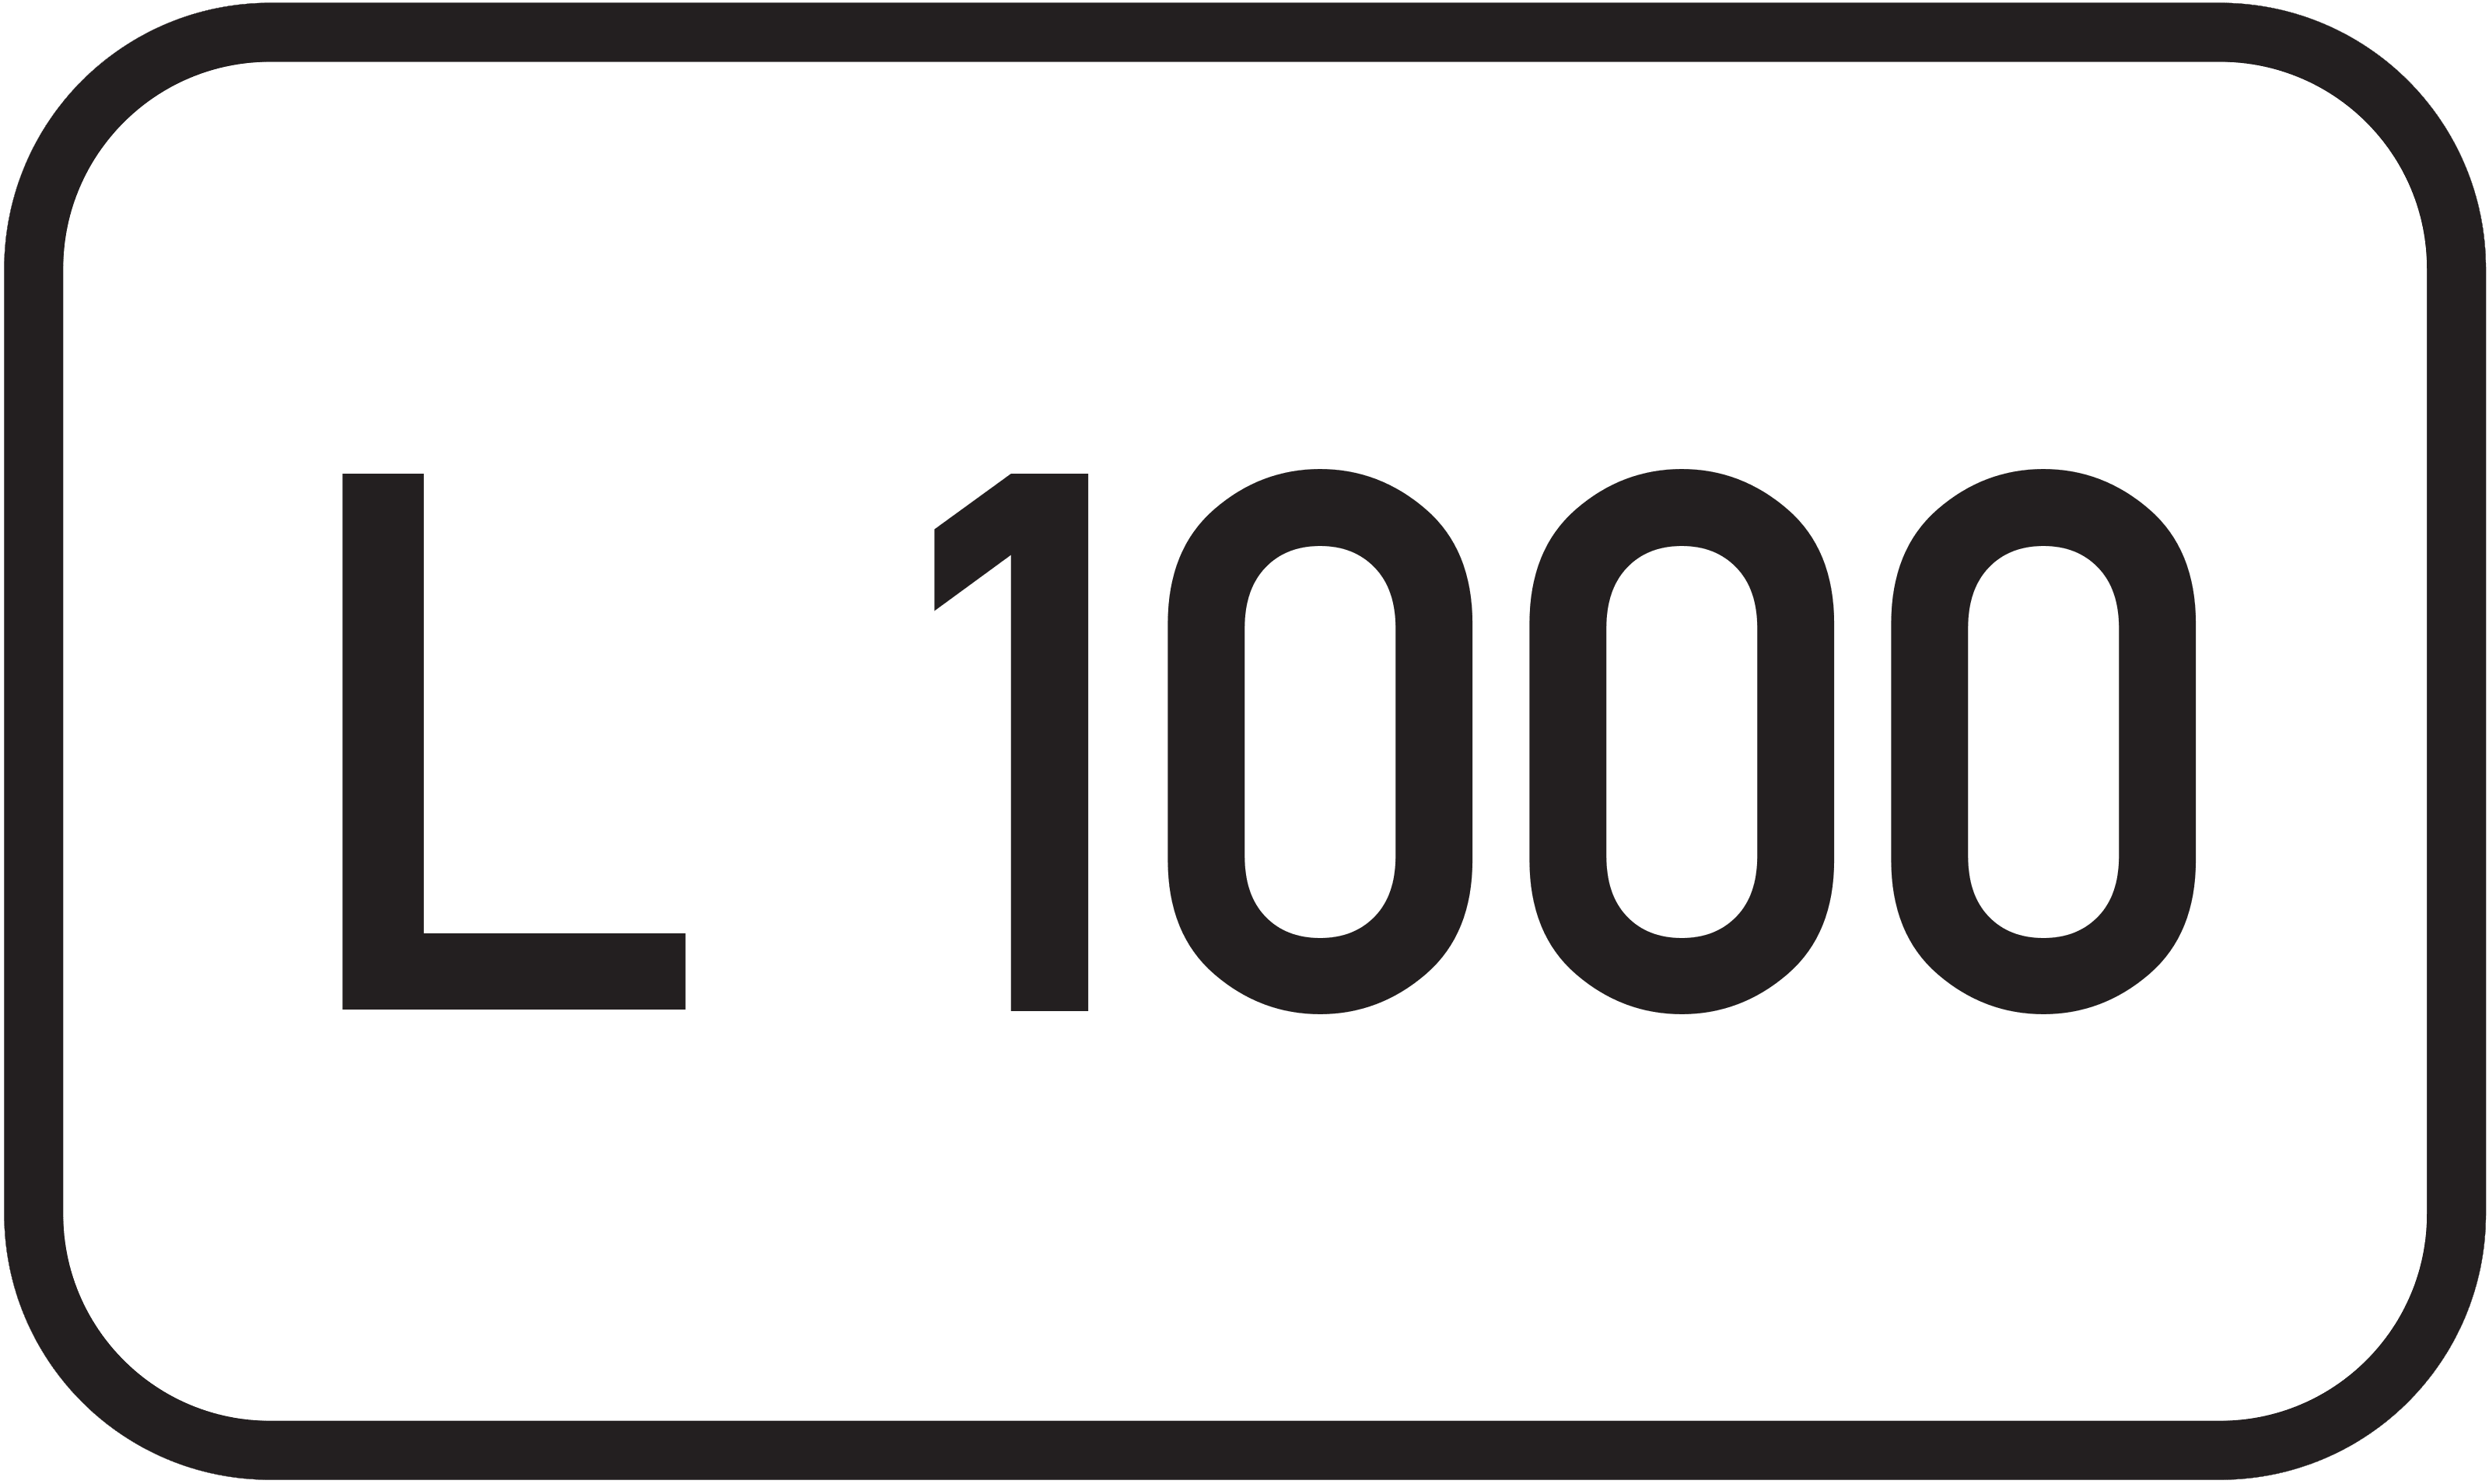 Landesstraße L 1000